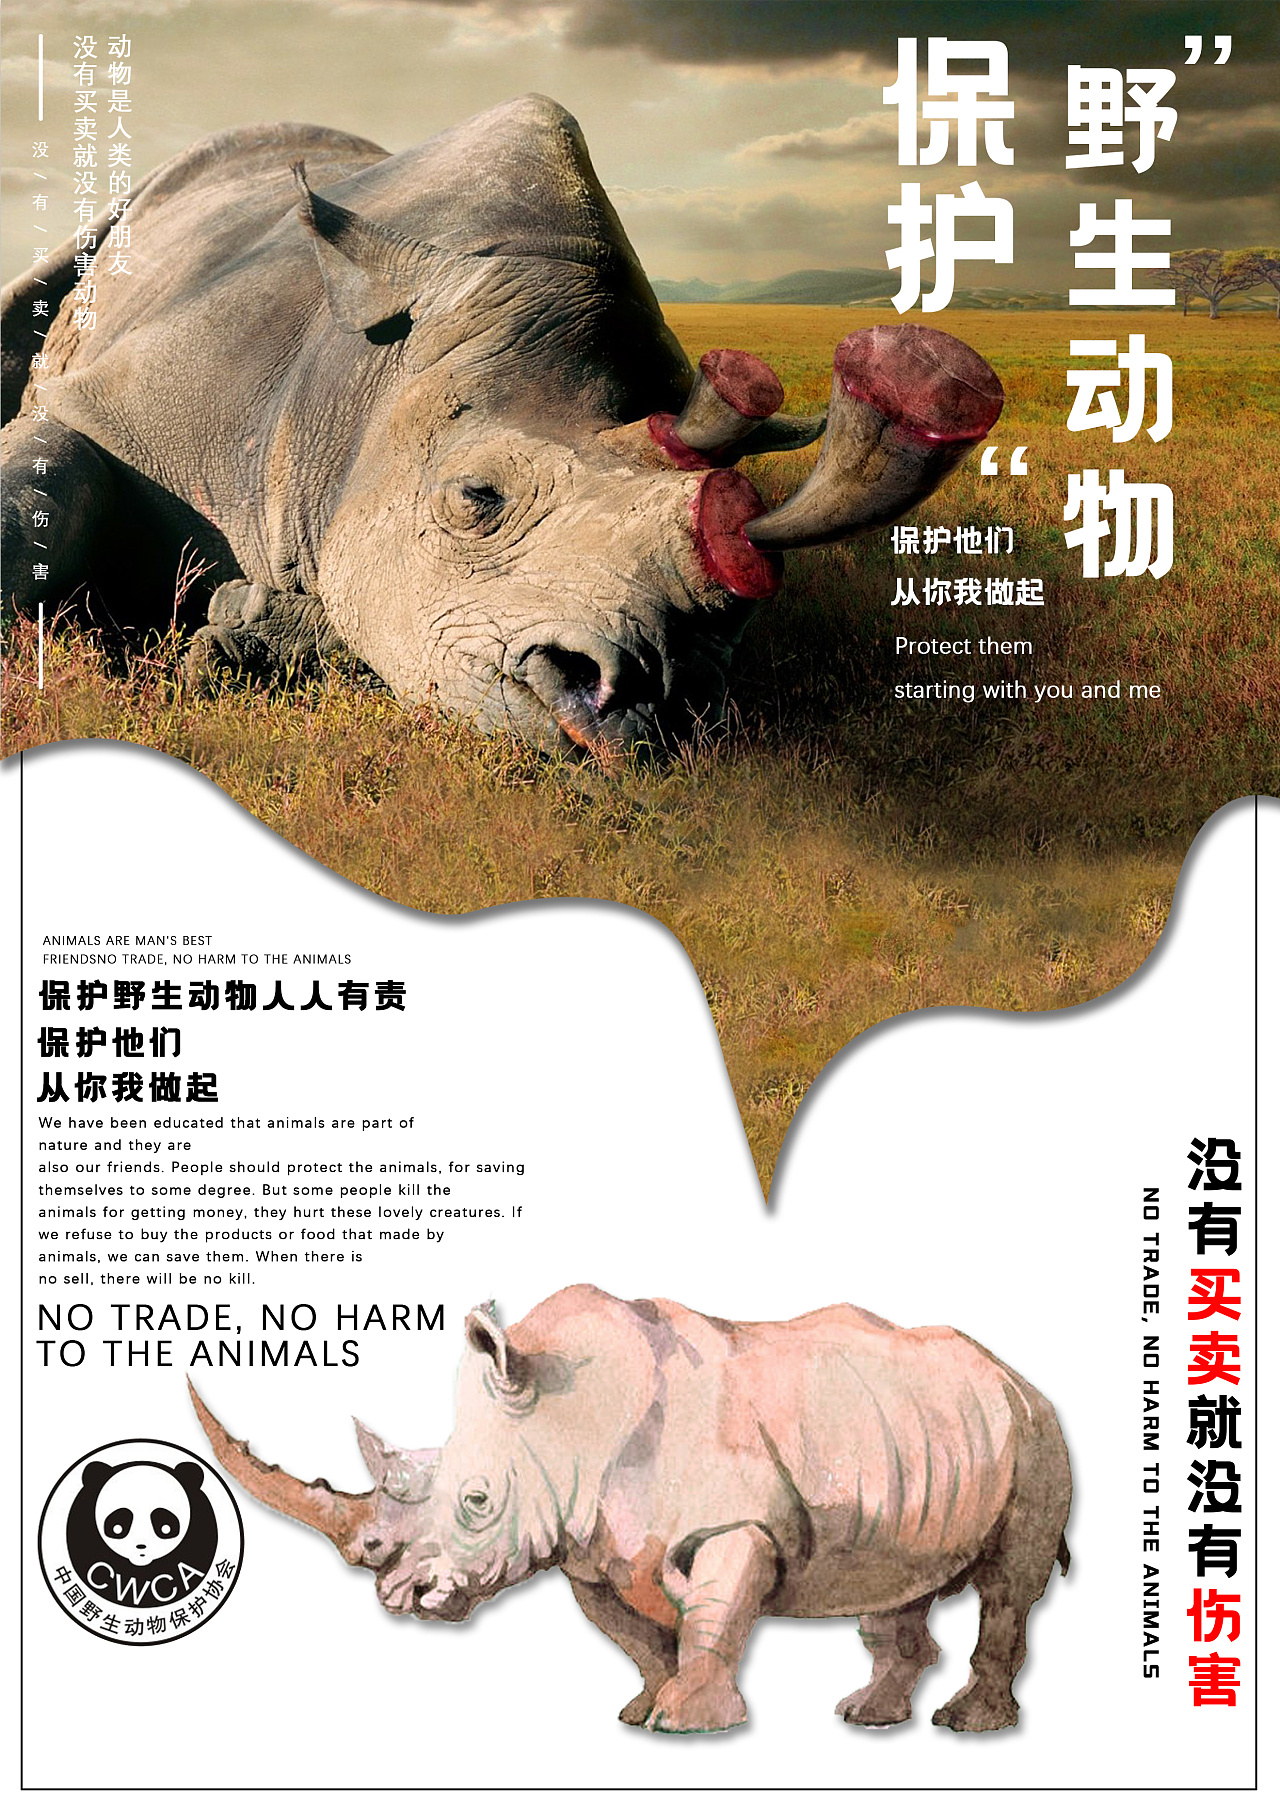 保护野生动物爱护同一个家园卡通动物世界动物园海报图片下载 - 觅知网